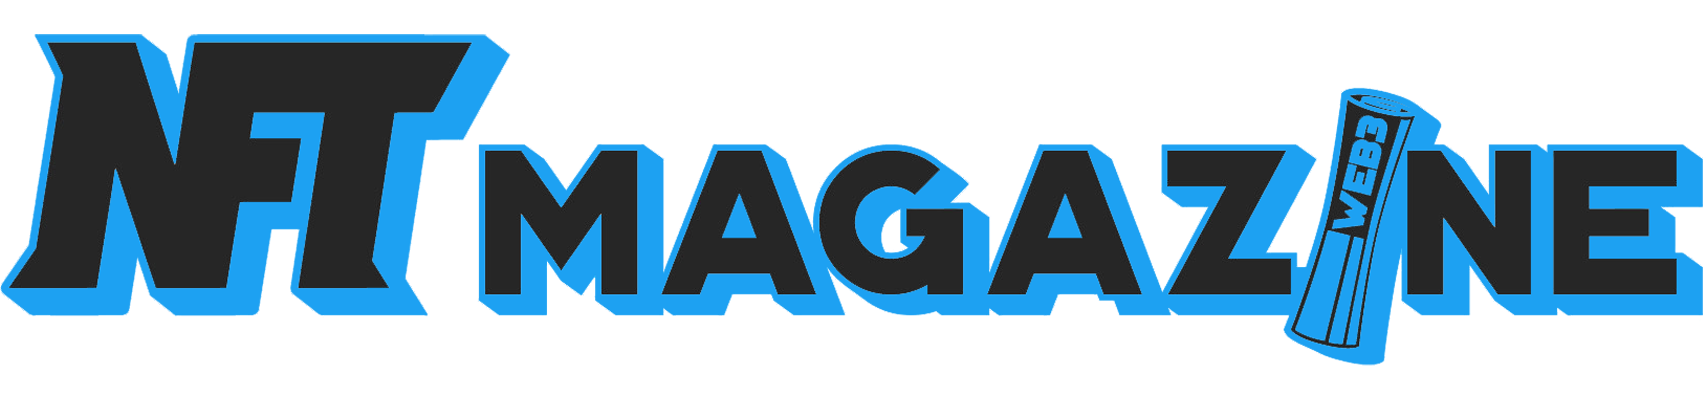 nftmag_logo.png